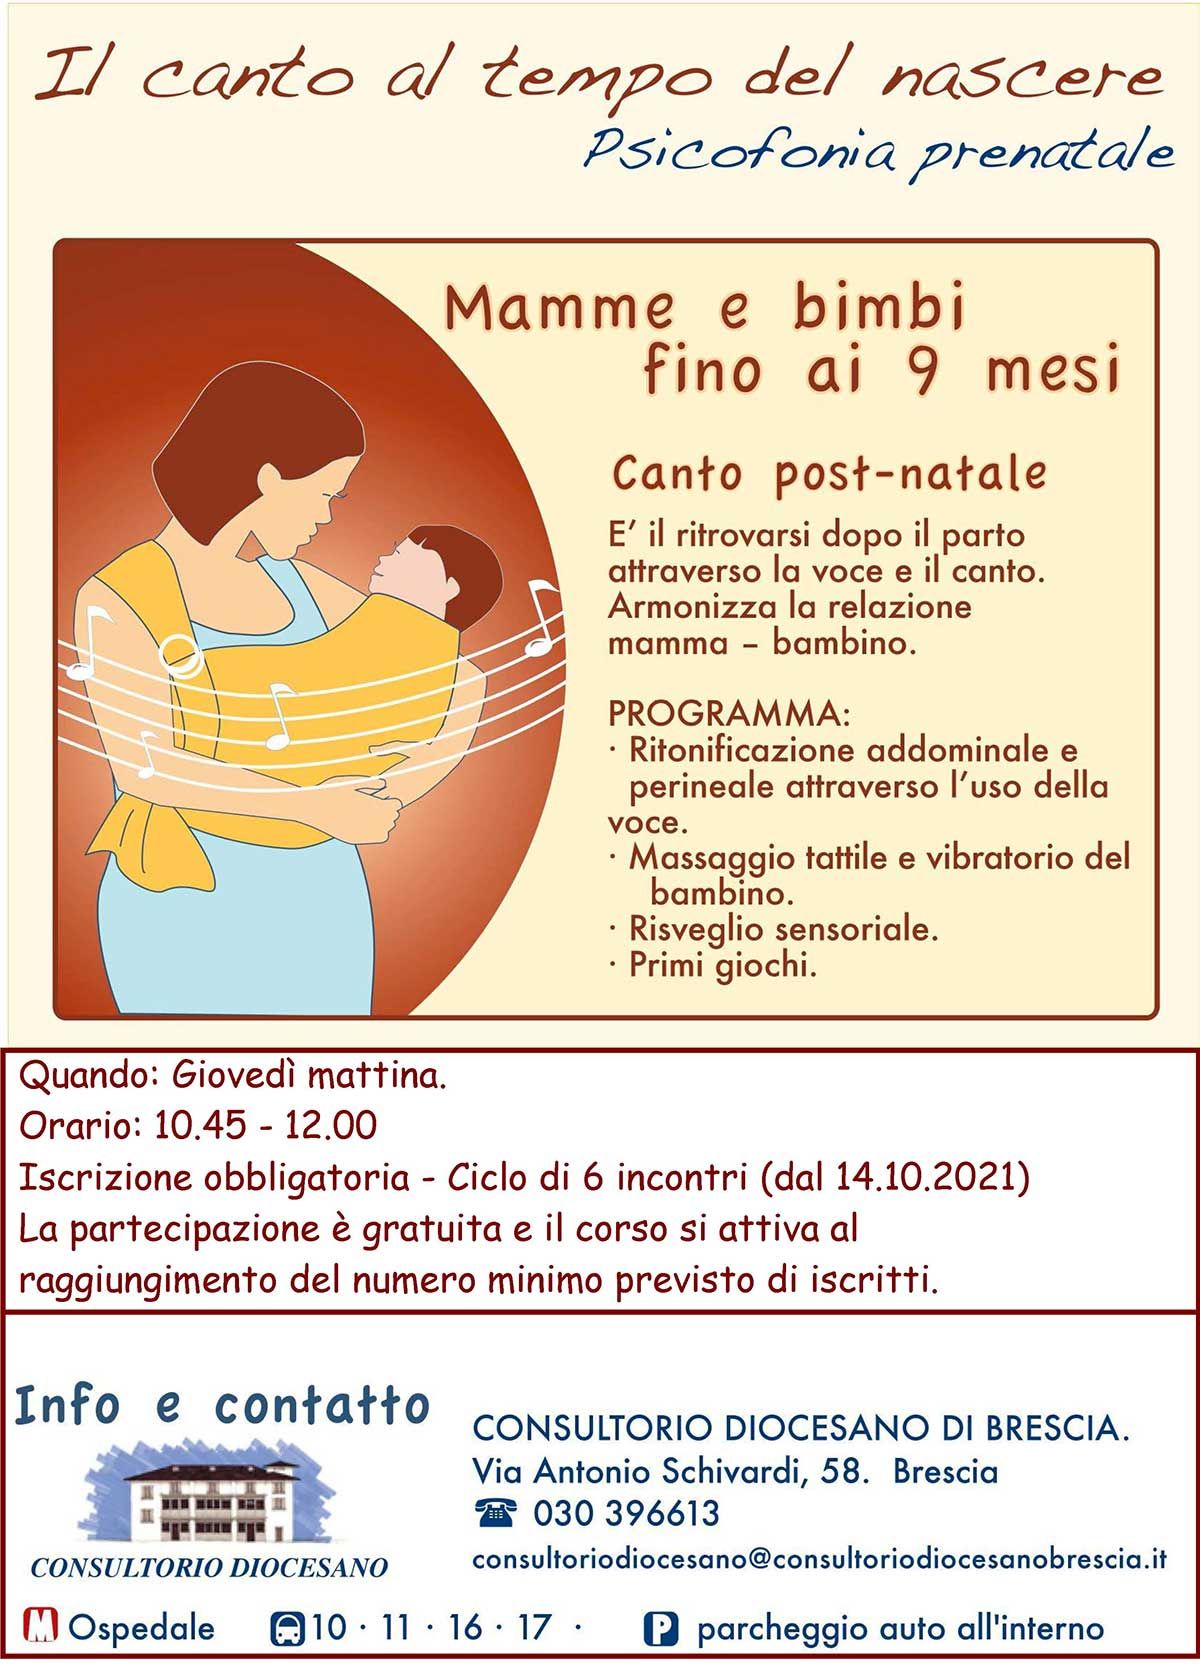 canto-postnatale-brescia-2021